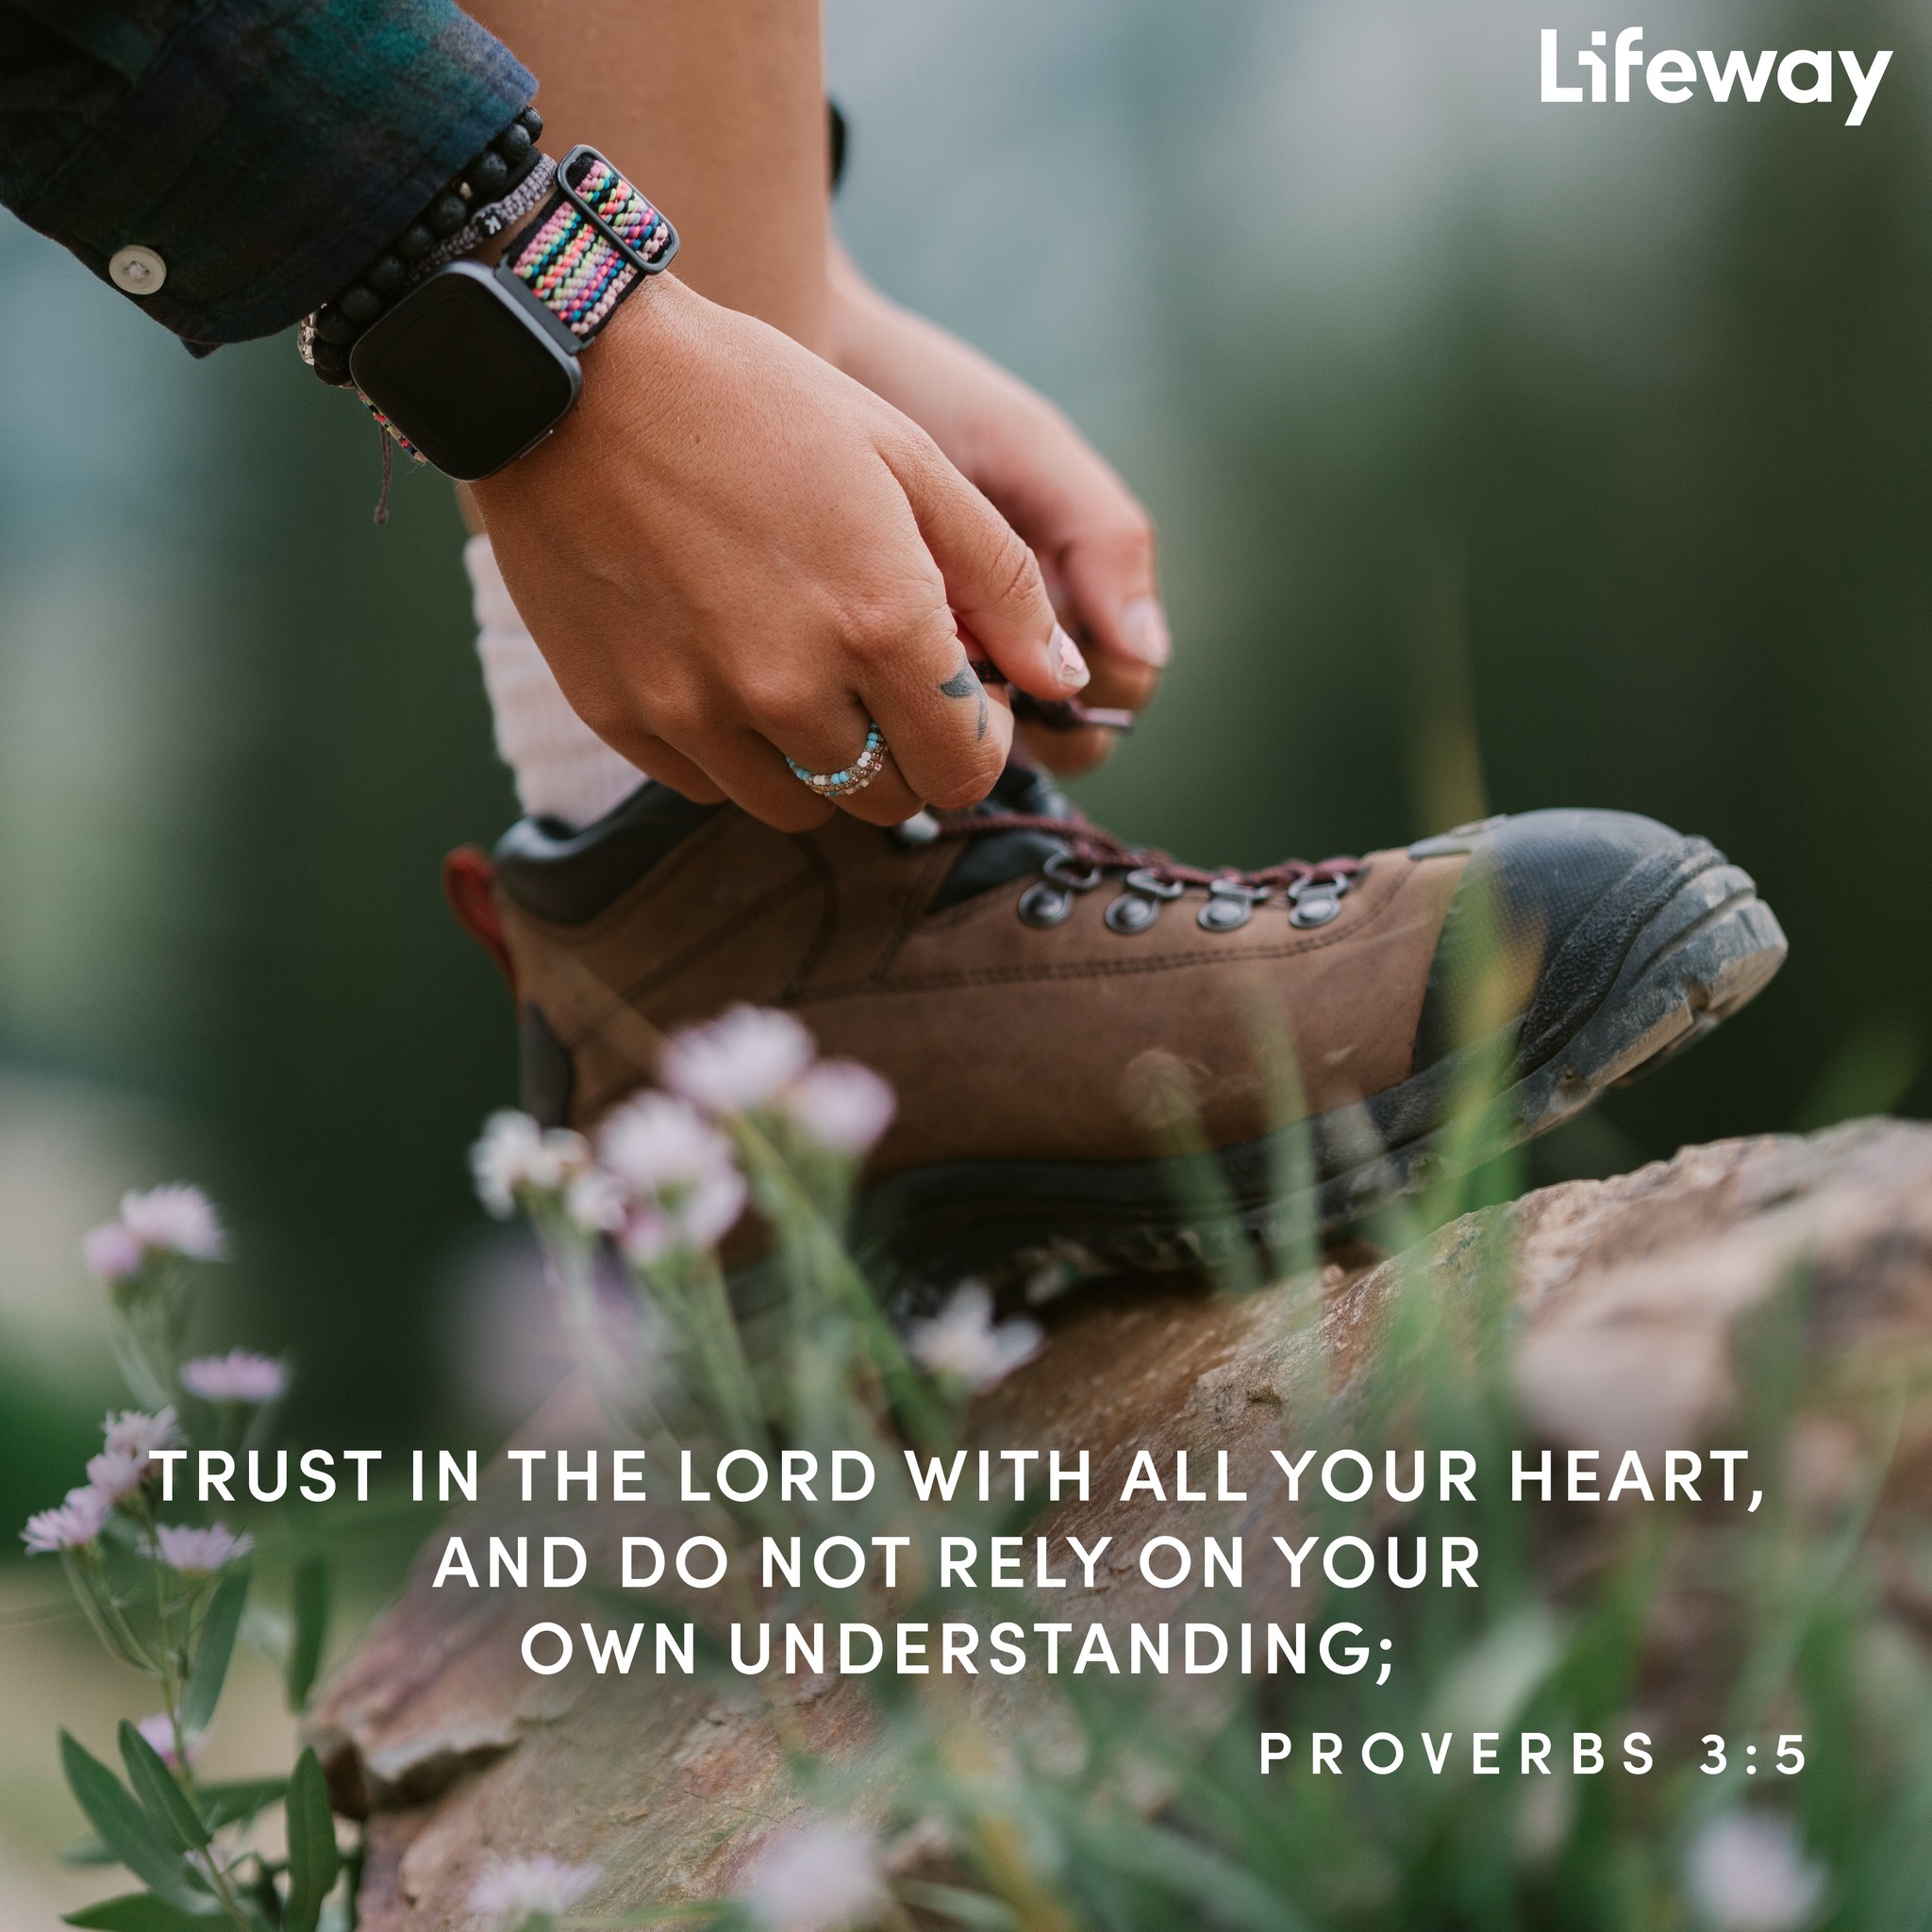 '通海 S Lifeway TRUST IN THE LORD WITH ALL YOUR HEART, AND DO NOT RELY ON YOUR OWN UNDERSTANDING; PROVERBS 3:5'